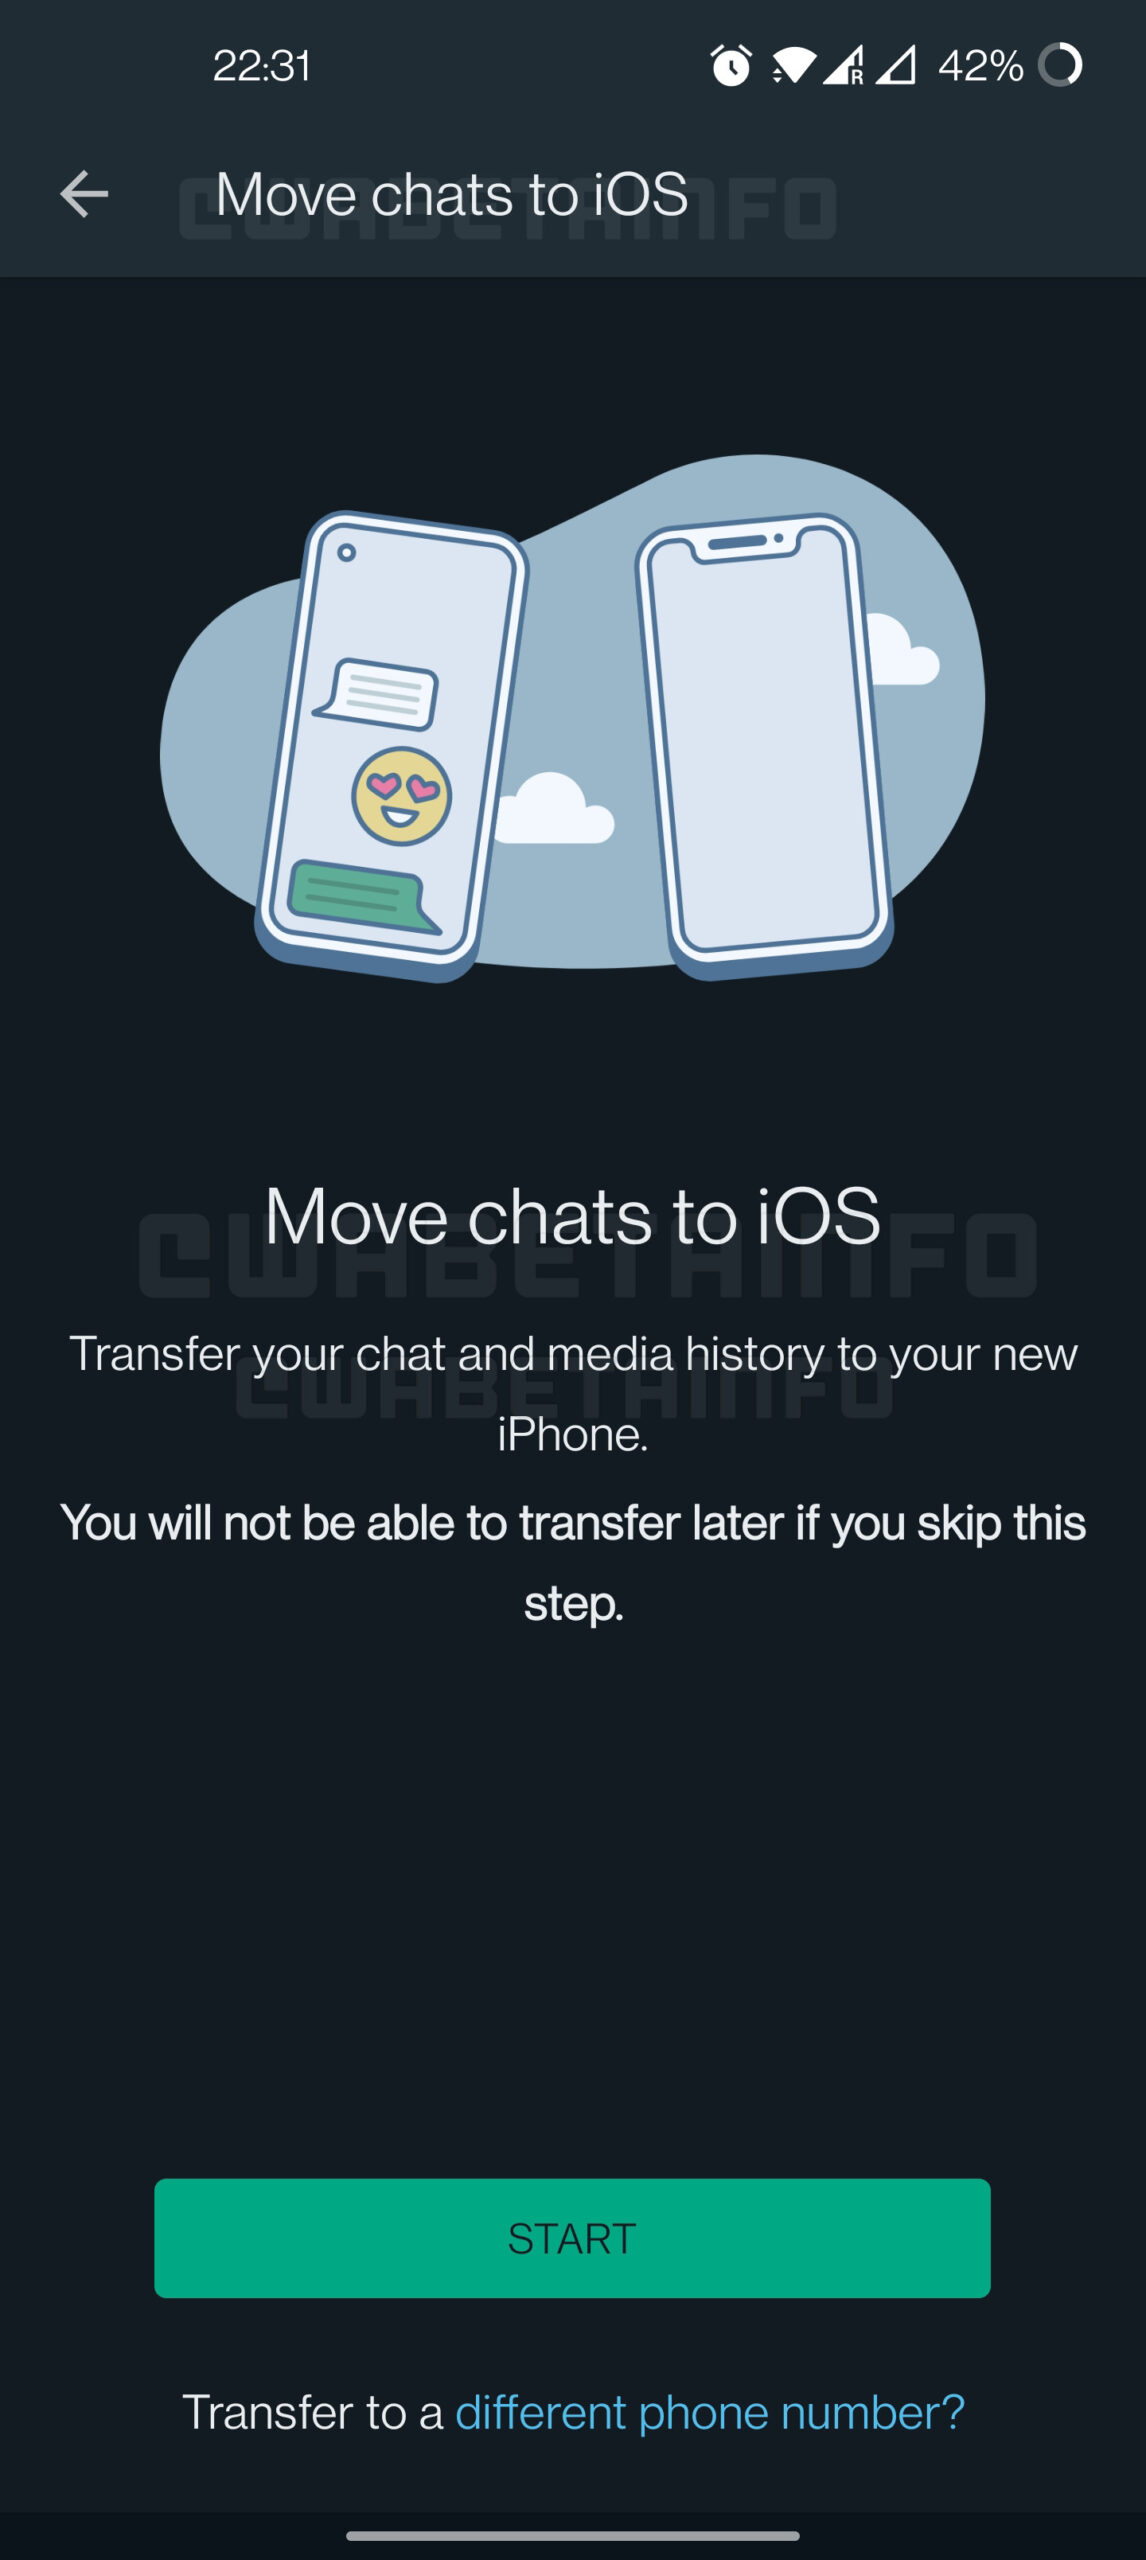 Mover conversaciones de WhatsApp Android iPhone disponible aplicación de prueba beta